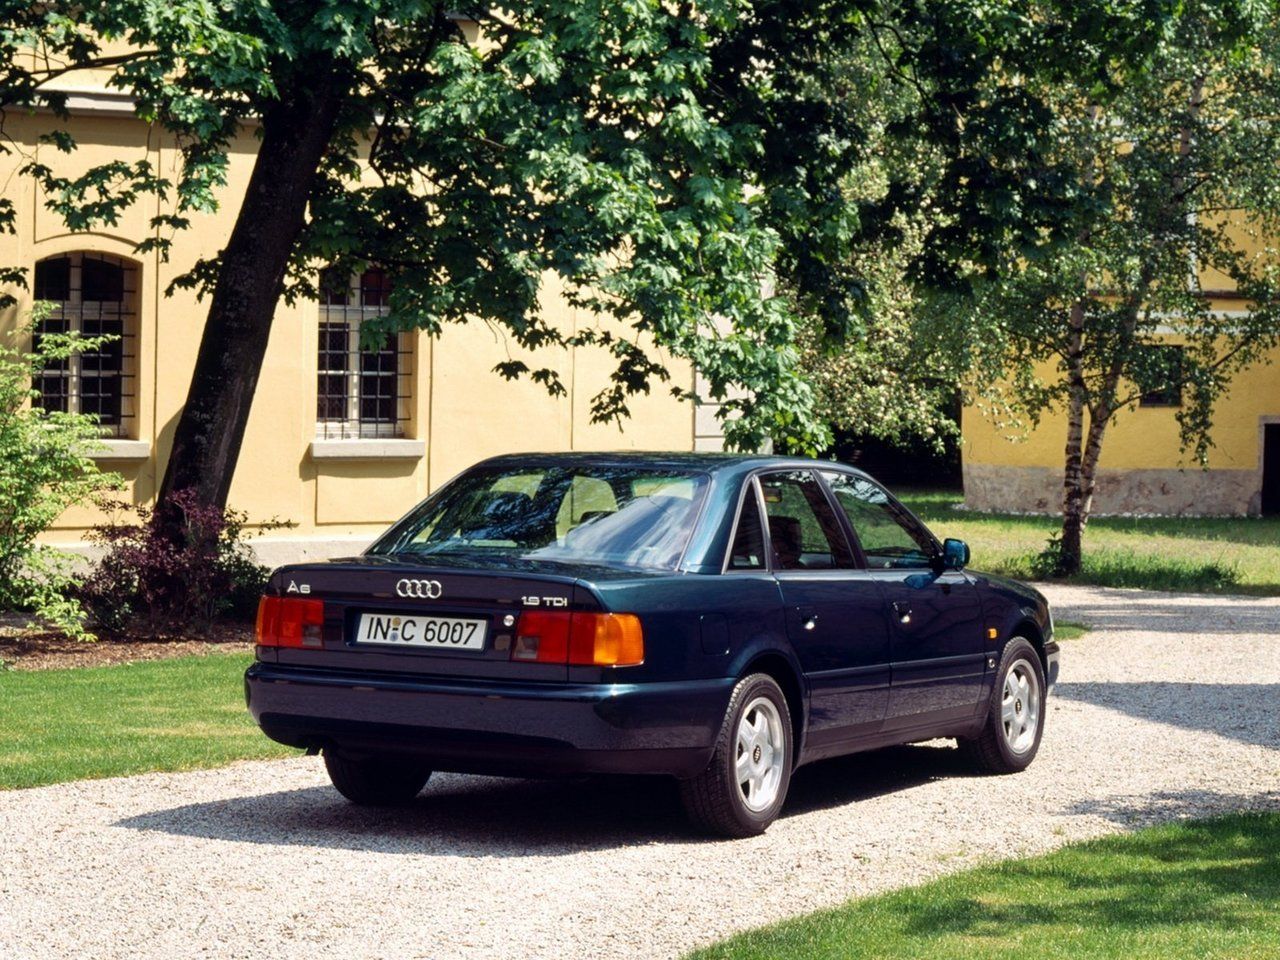 06 06 1990. Audi a6 c4 1994. Audi a6 c4, 1994-1997, седан. Audi a6 1994. Audi a6 c4 1997.